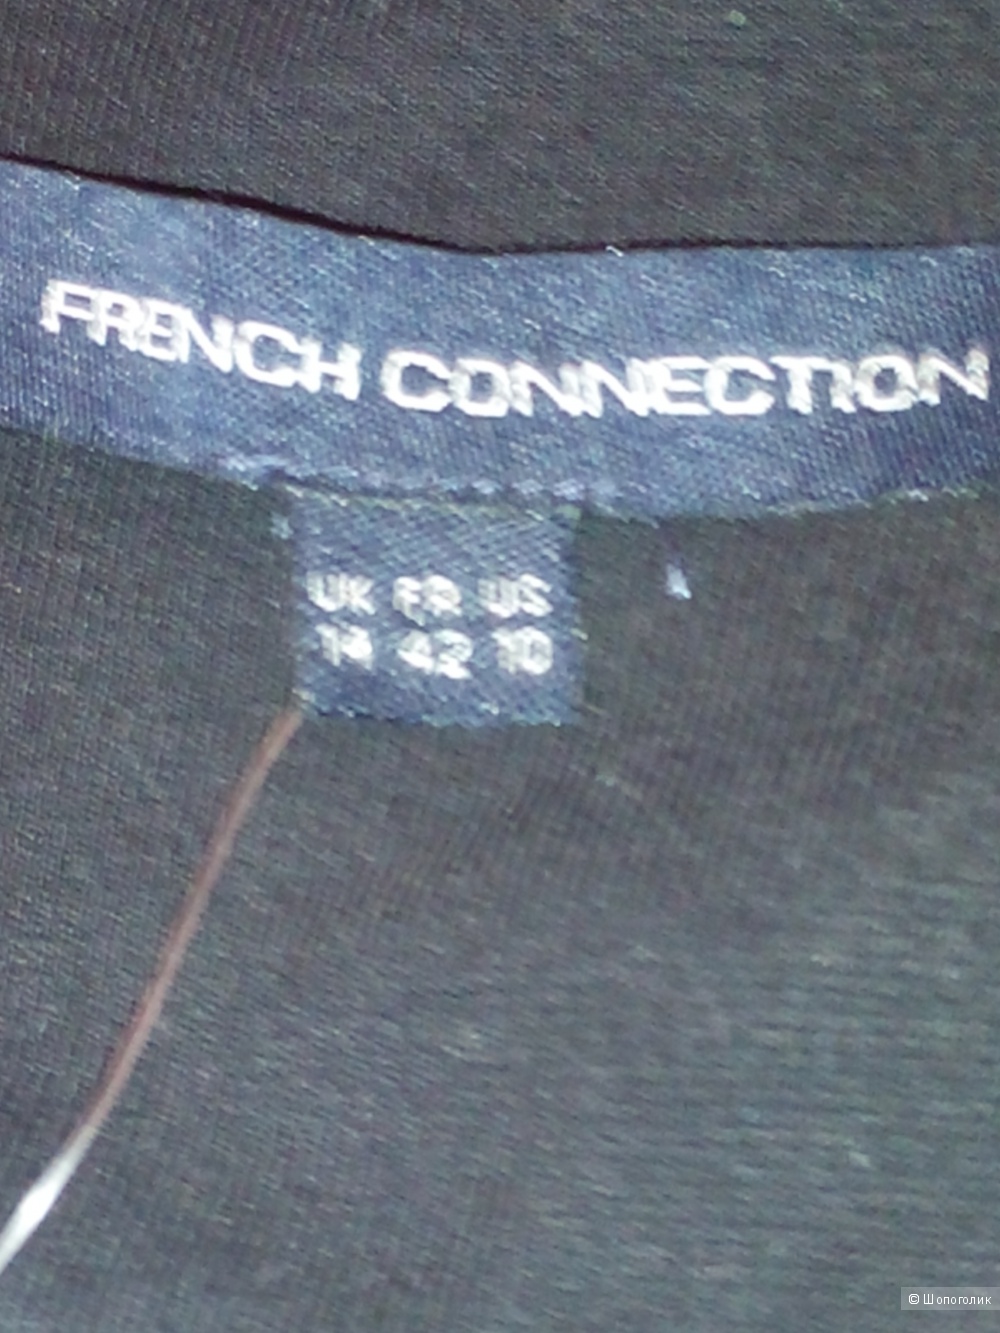 Платье новое "French Connection"  размер 14 UK  44- 46 россия (42)